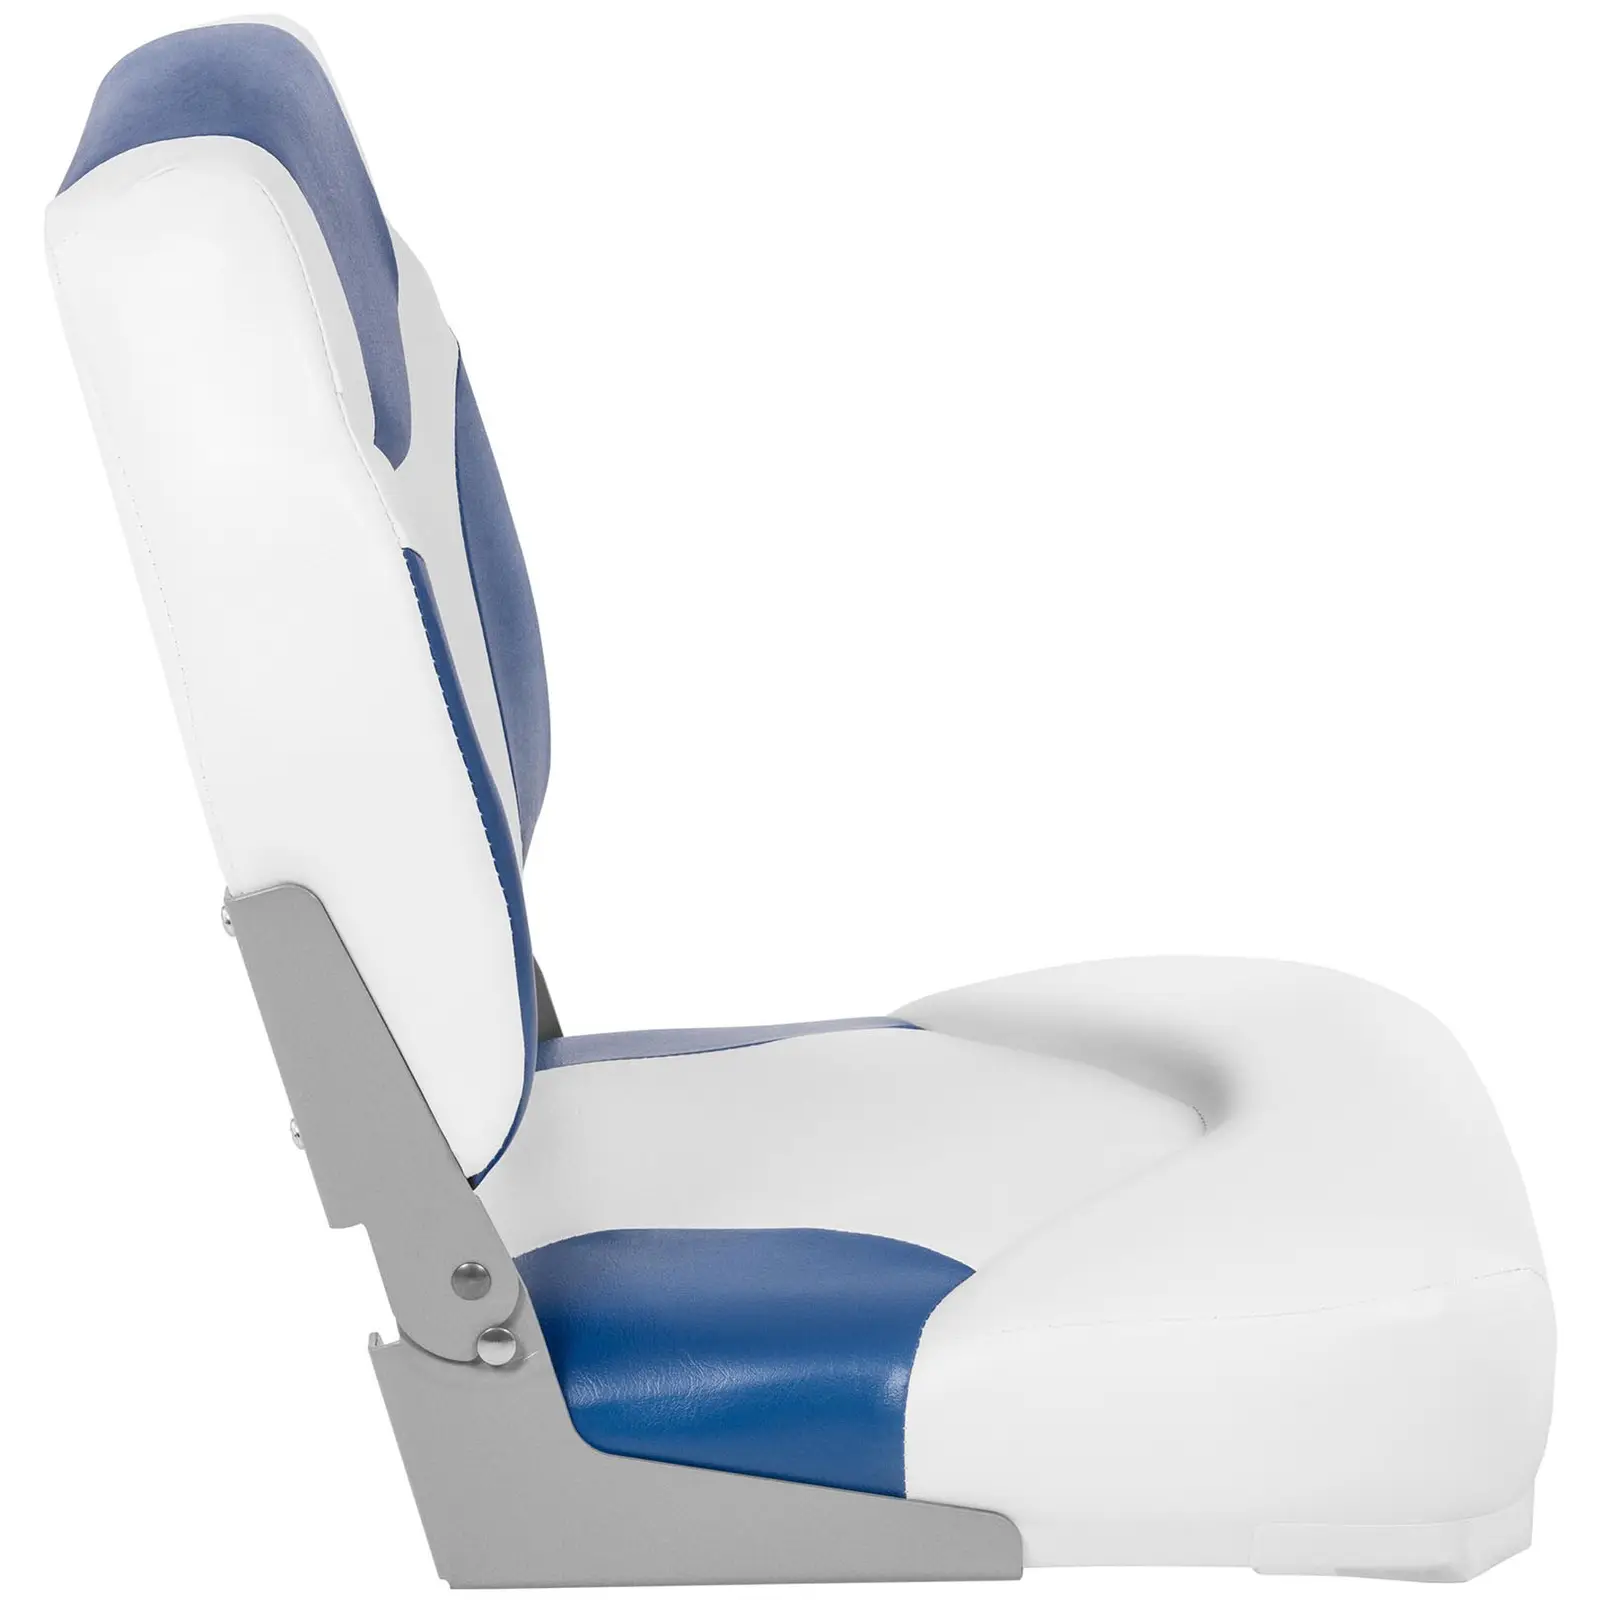 Fotel do łodzi - 40x40x50cm - biało-niebieski